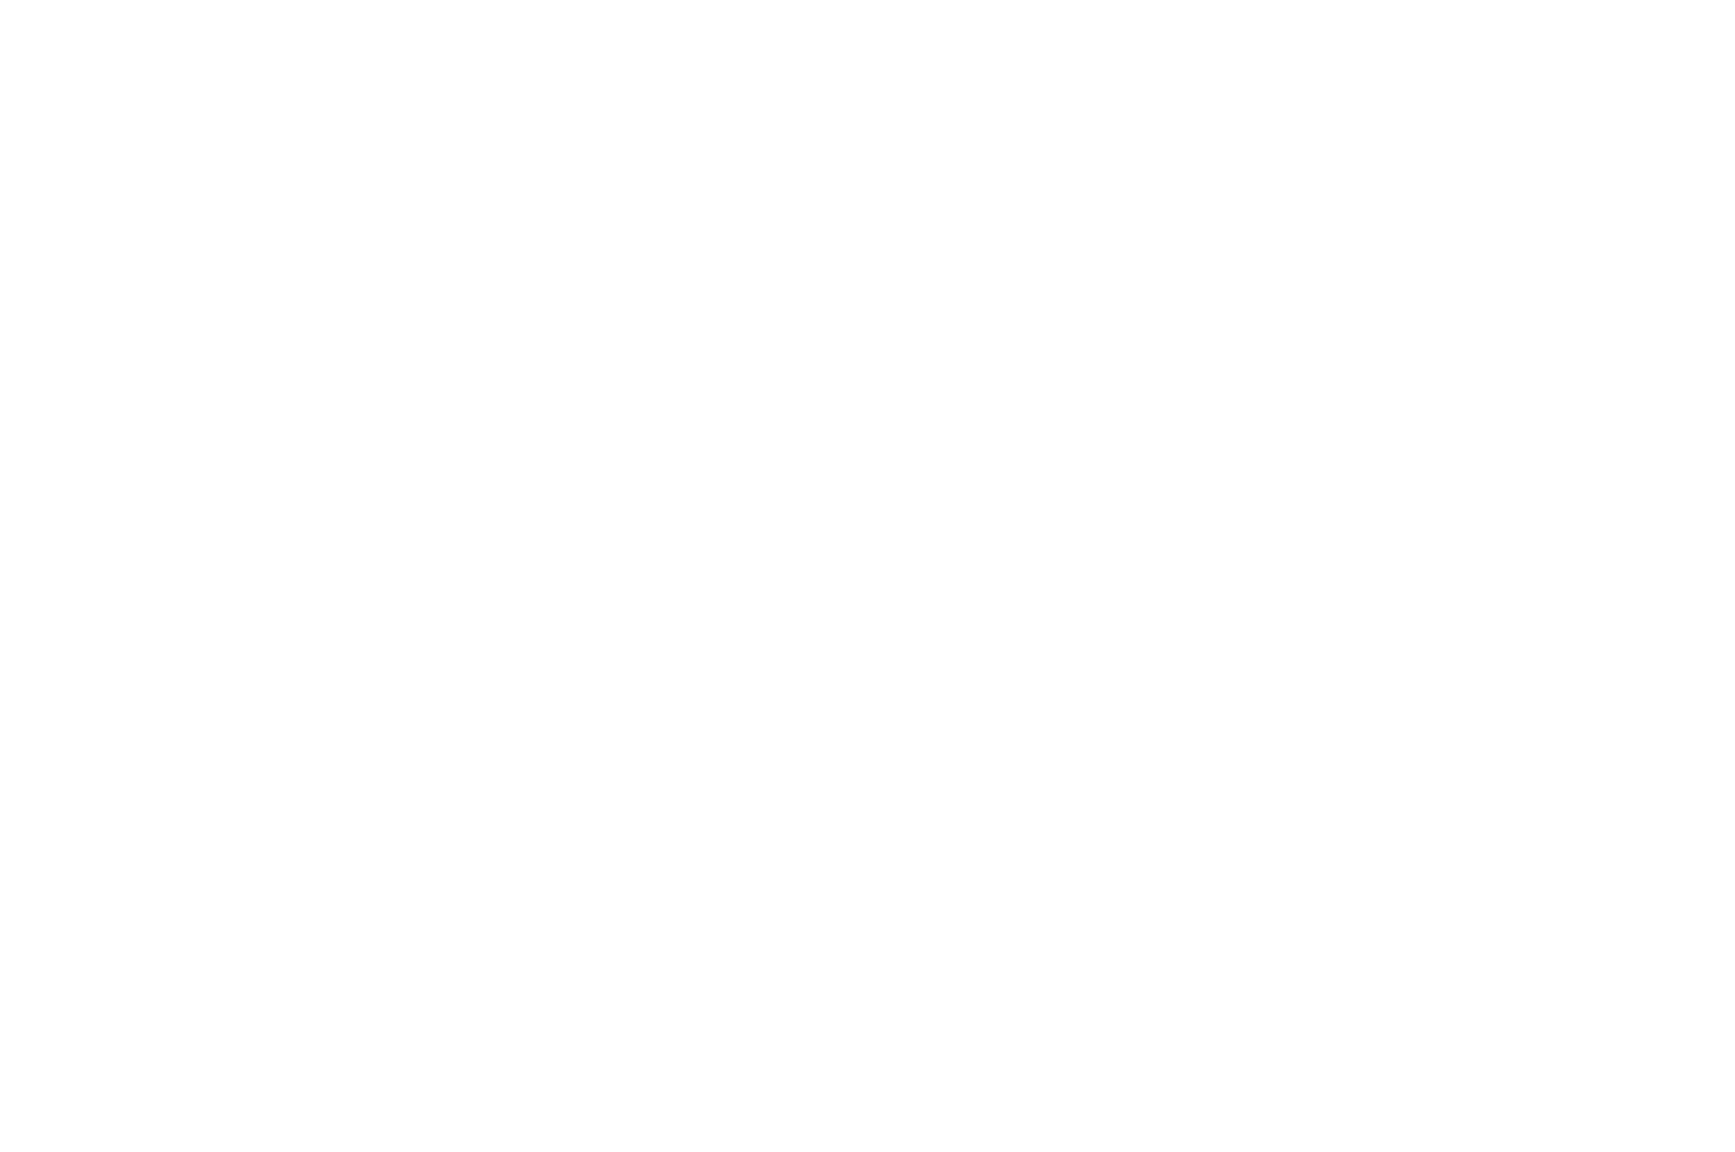 WINNER  - HONORABLE MENTION CAMERA DOR - PHENICIEN INTERNATIONAL FILM FESTIVAL 2017 (1).png